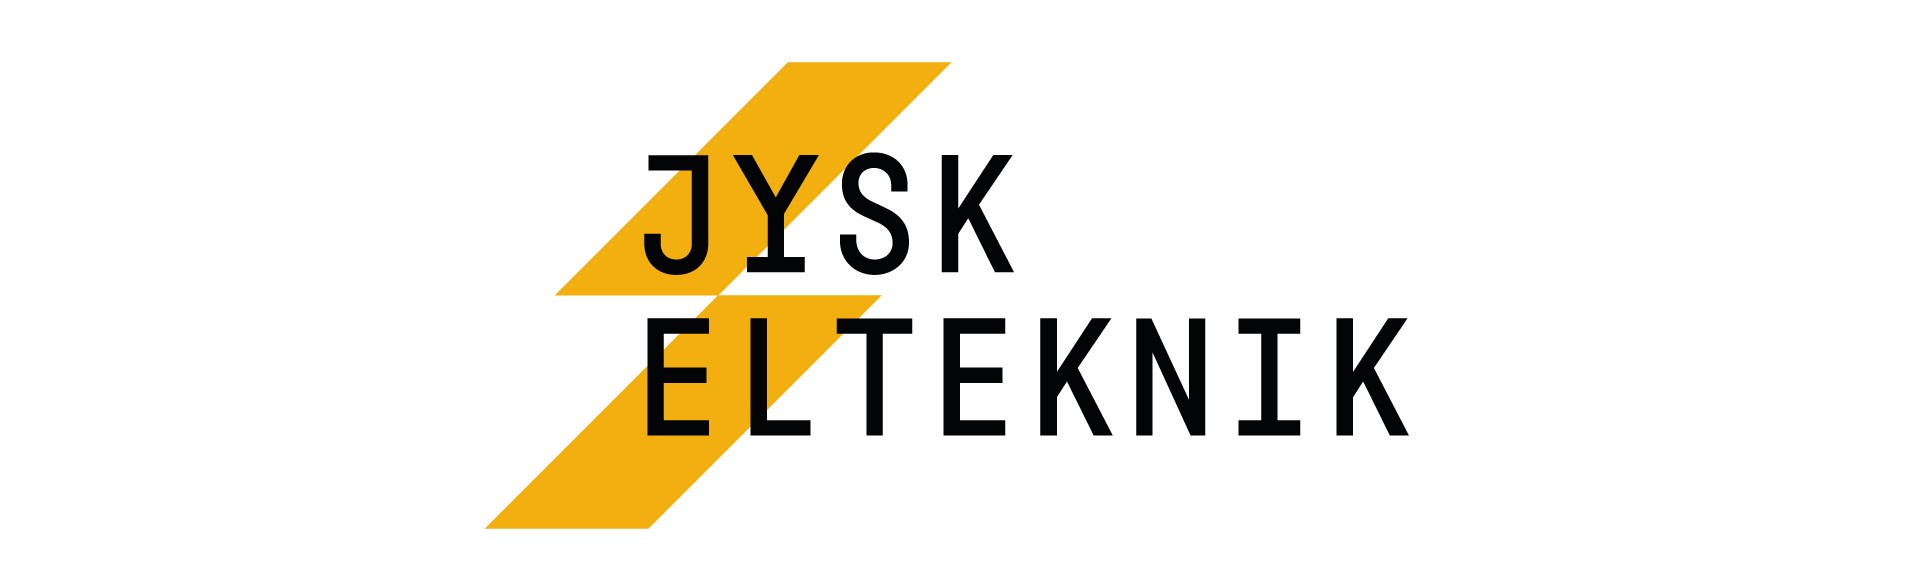 Teleboxen_Reference_Jysk_Elteknik_Topbanner.jpg